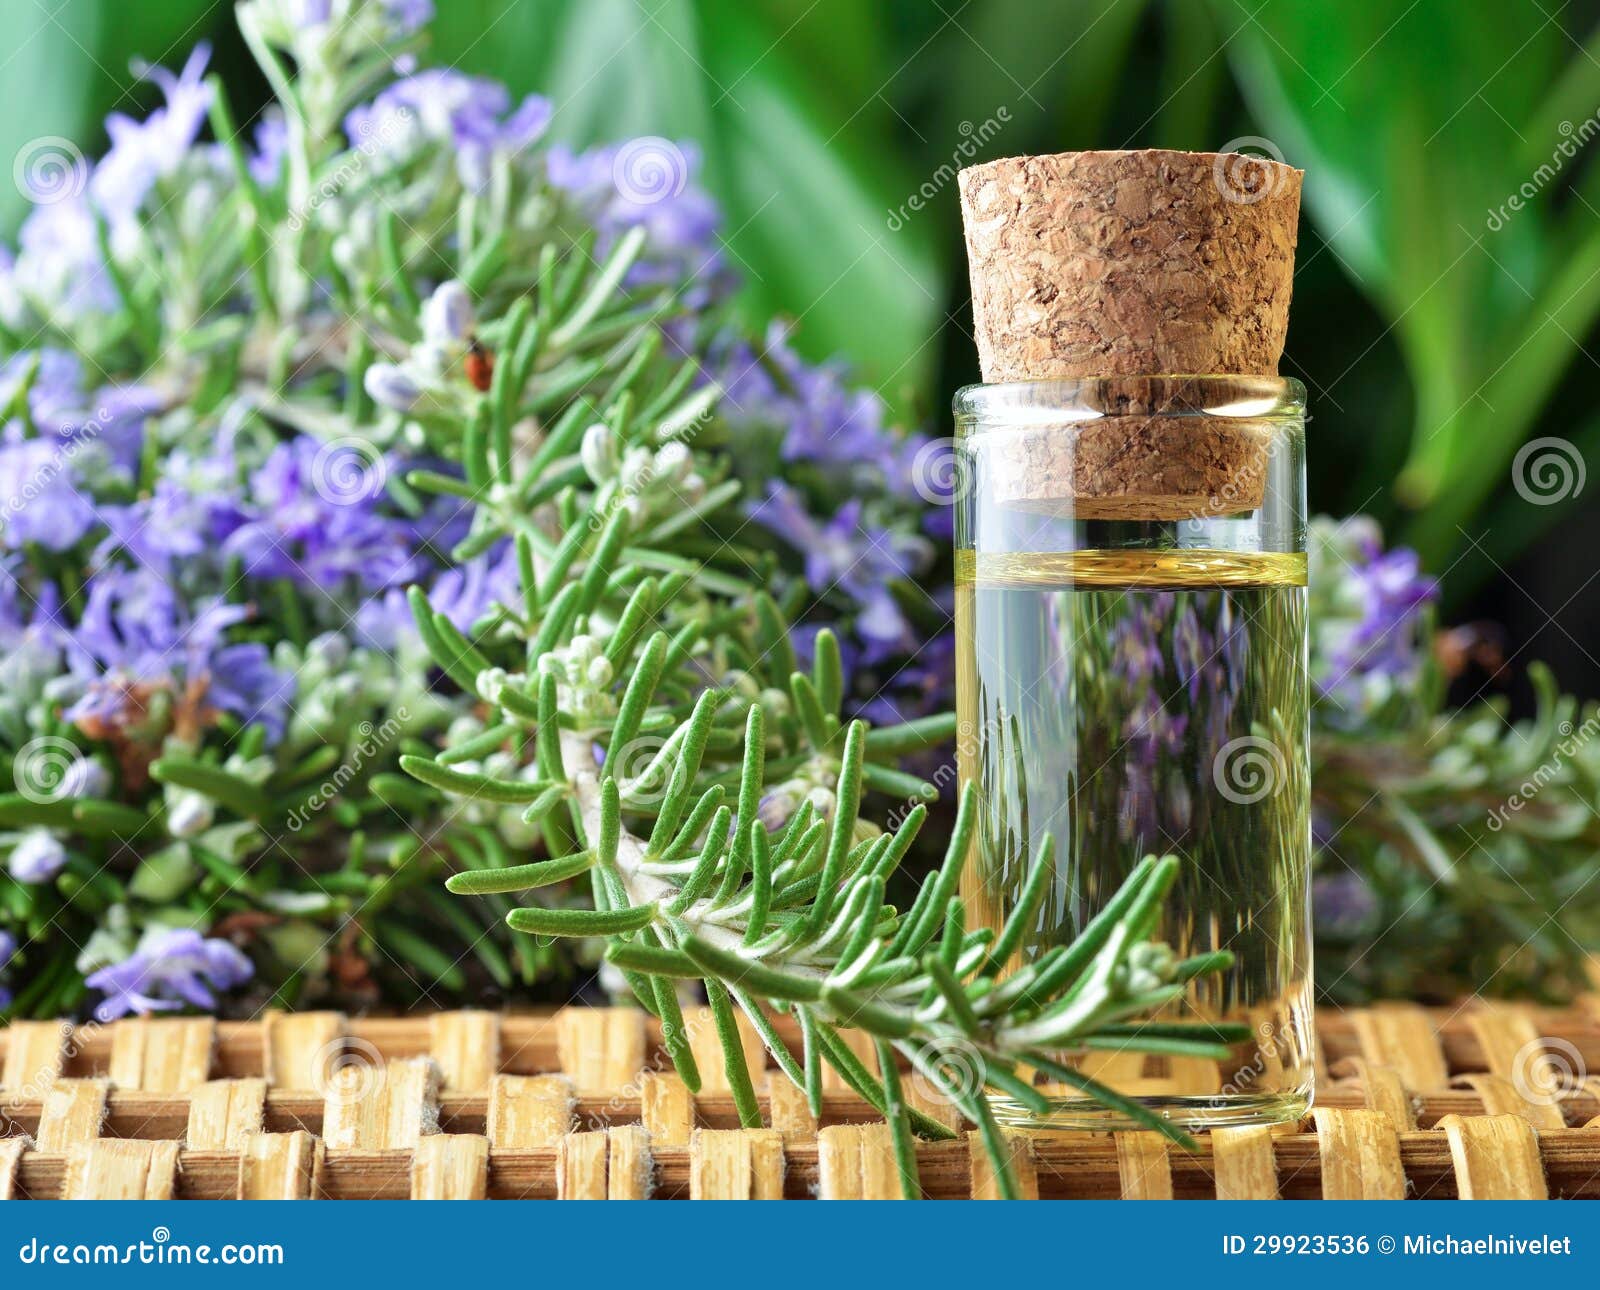 aromatherapy oil